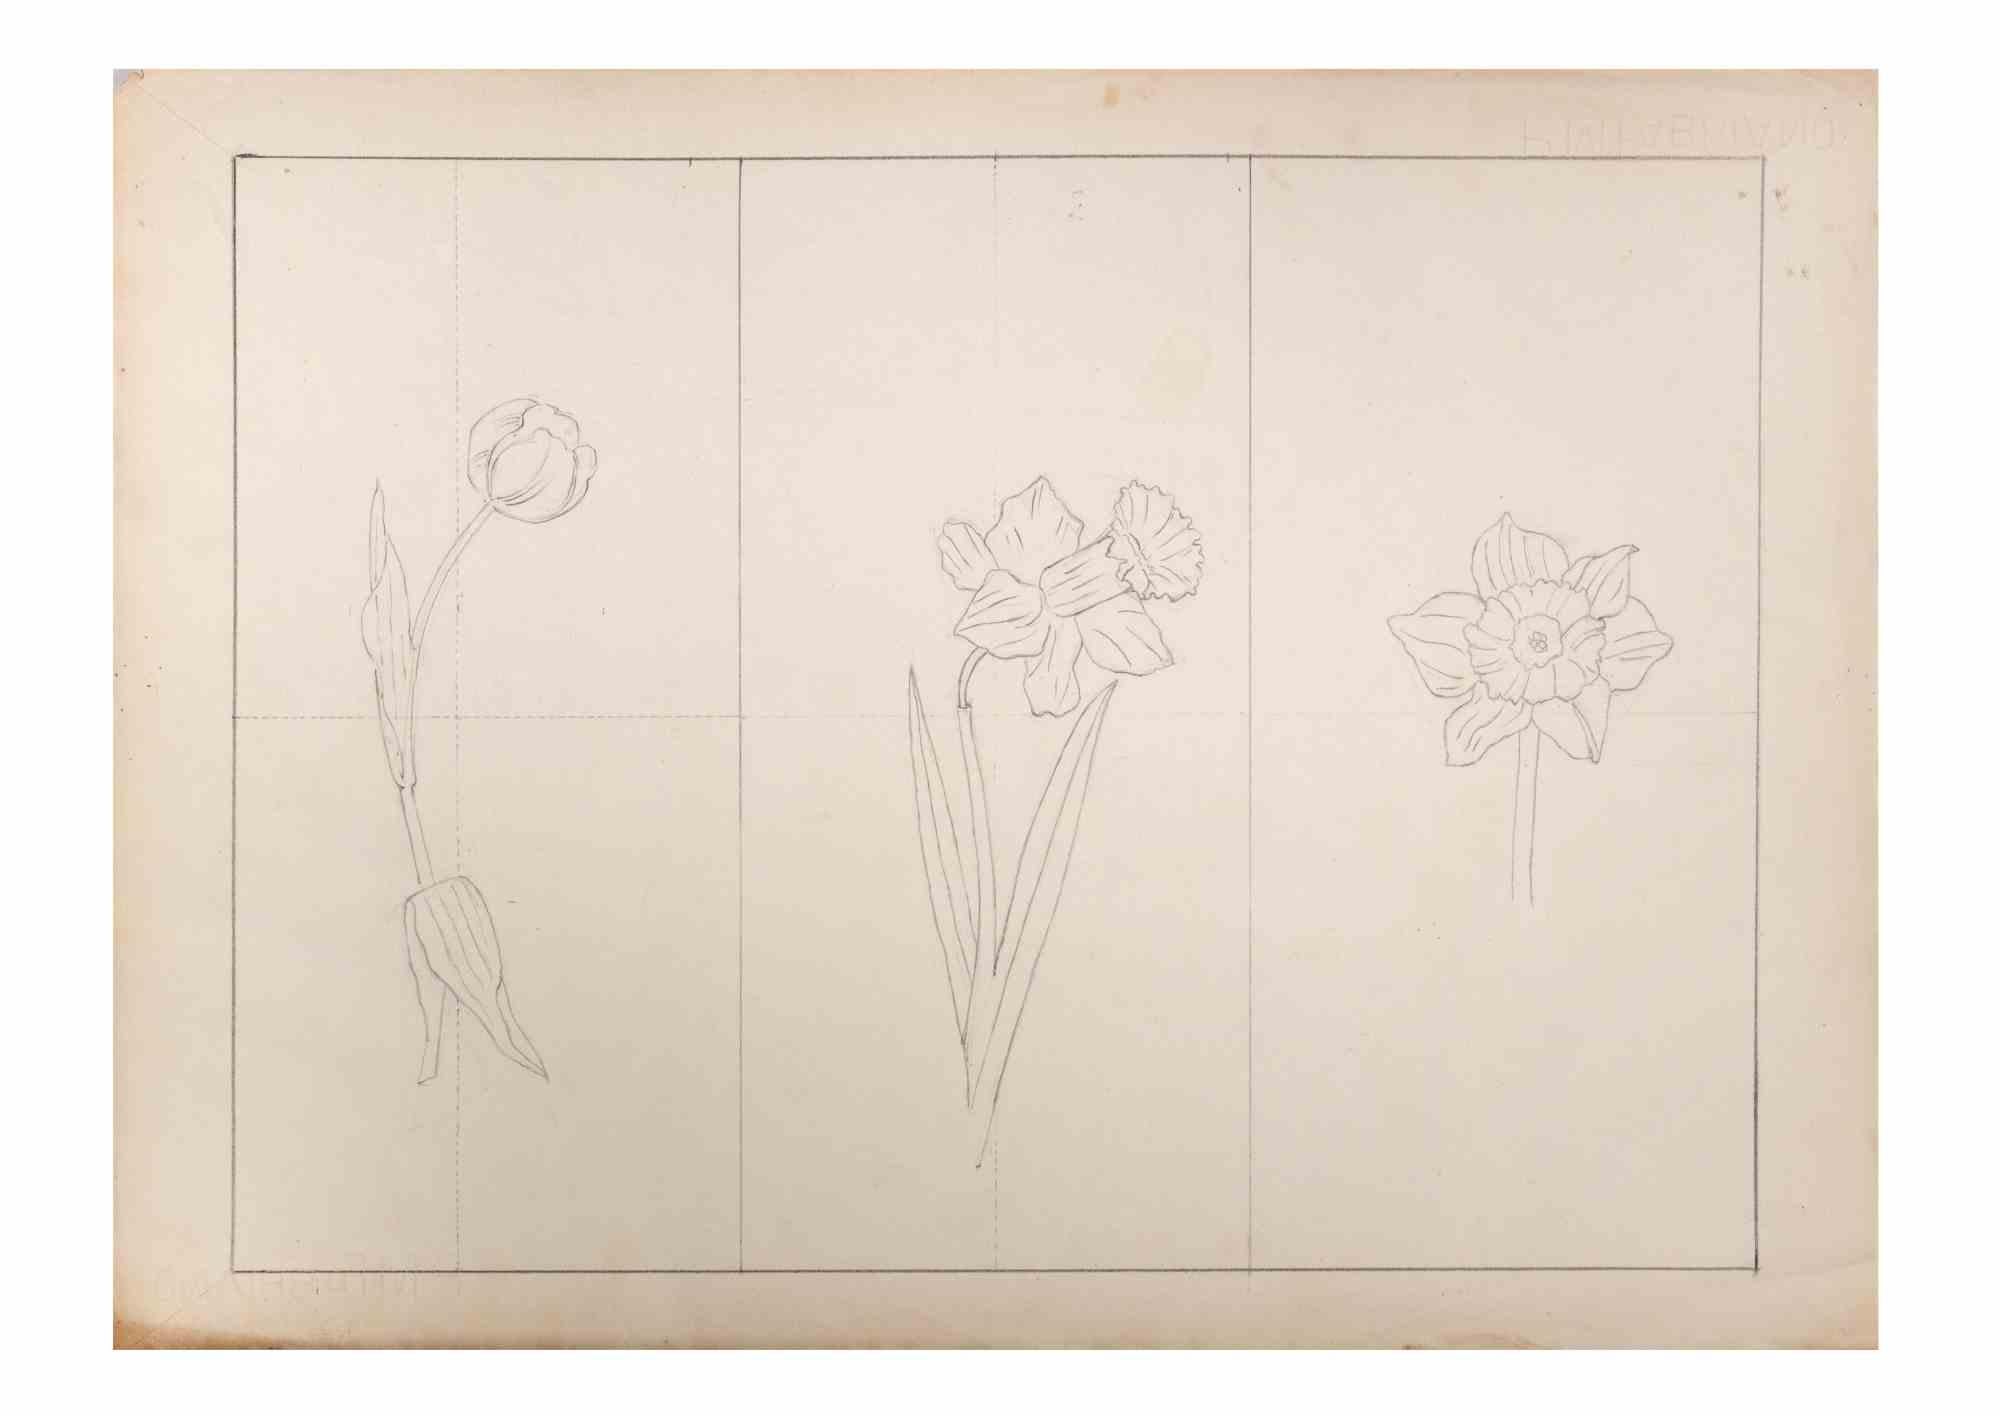 Jonquils ist ein Kunstwerk des italienischen Künstlers Aurelio Mistruzzi aus dem Jahr 1905.

Bleistift-Zeichnung auf Papier .

Gute Bedingungen.

Aurelio Mistruzzi (1880-1960) studierte an der Kunstschule von Udine und hatte Unterricht bei dem